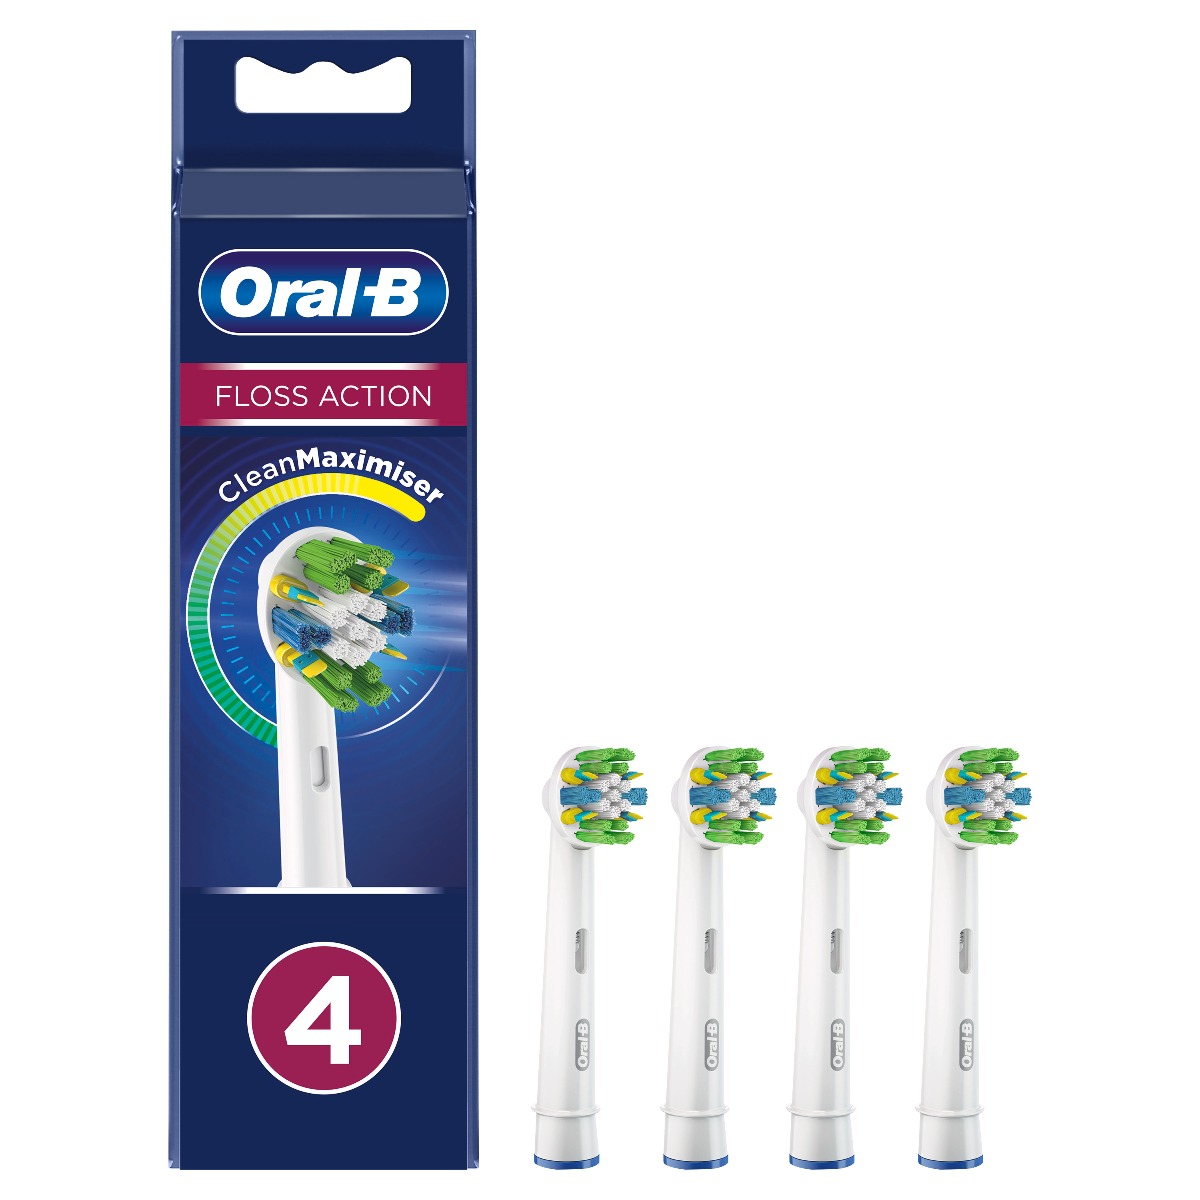 Oral-B EB 25-4 Floss Action náhradní hlavice s technologií CleanMaximiser 4 ks Oral-B